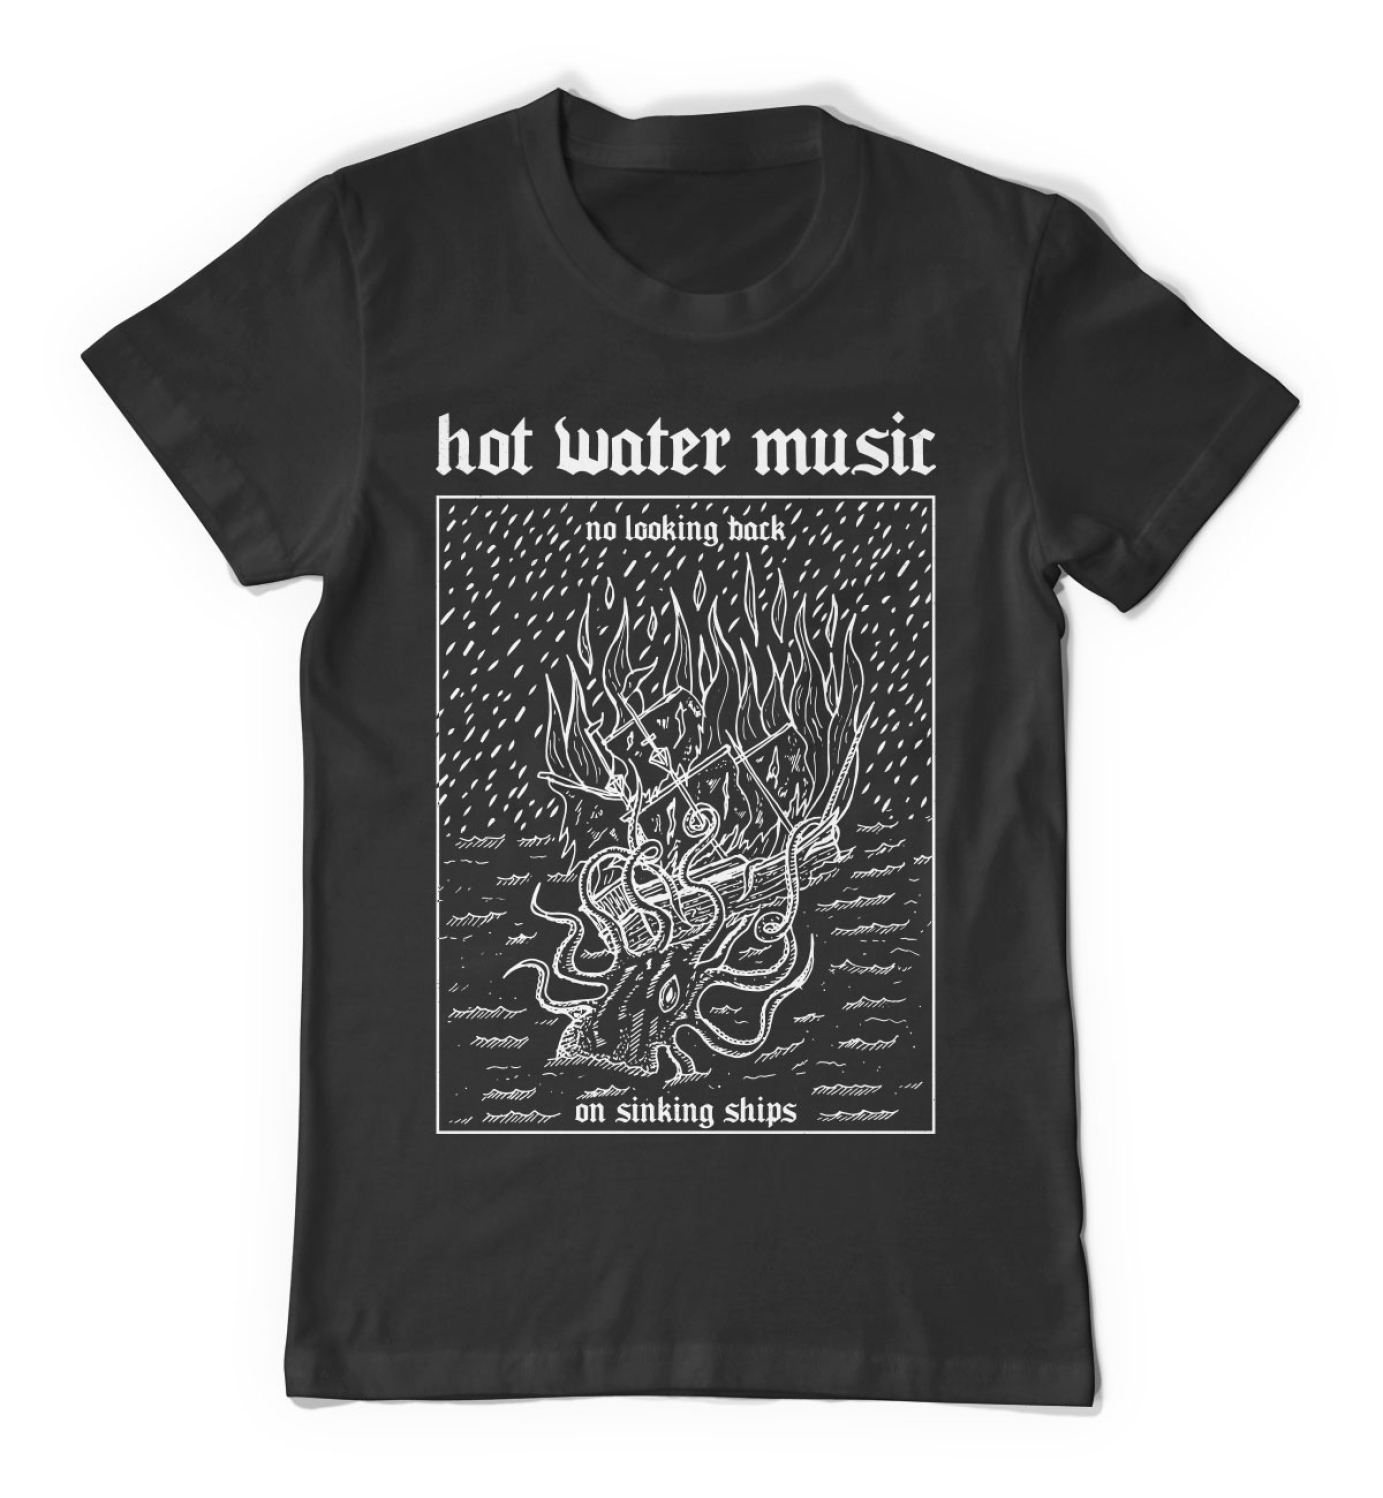 Hot Water Music - Merchandise